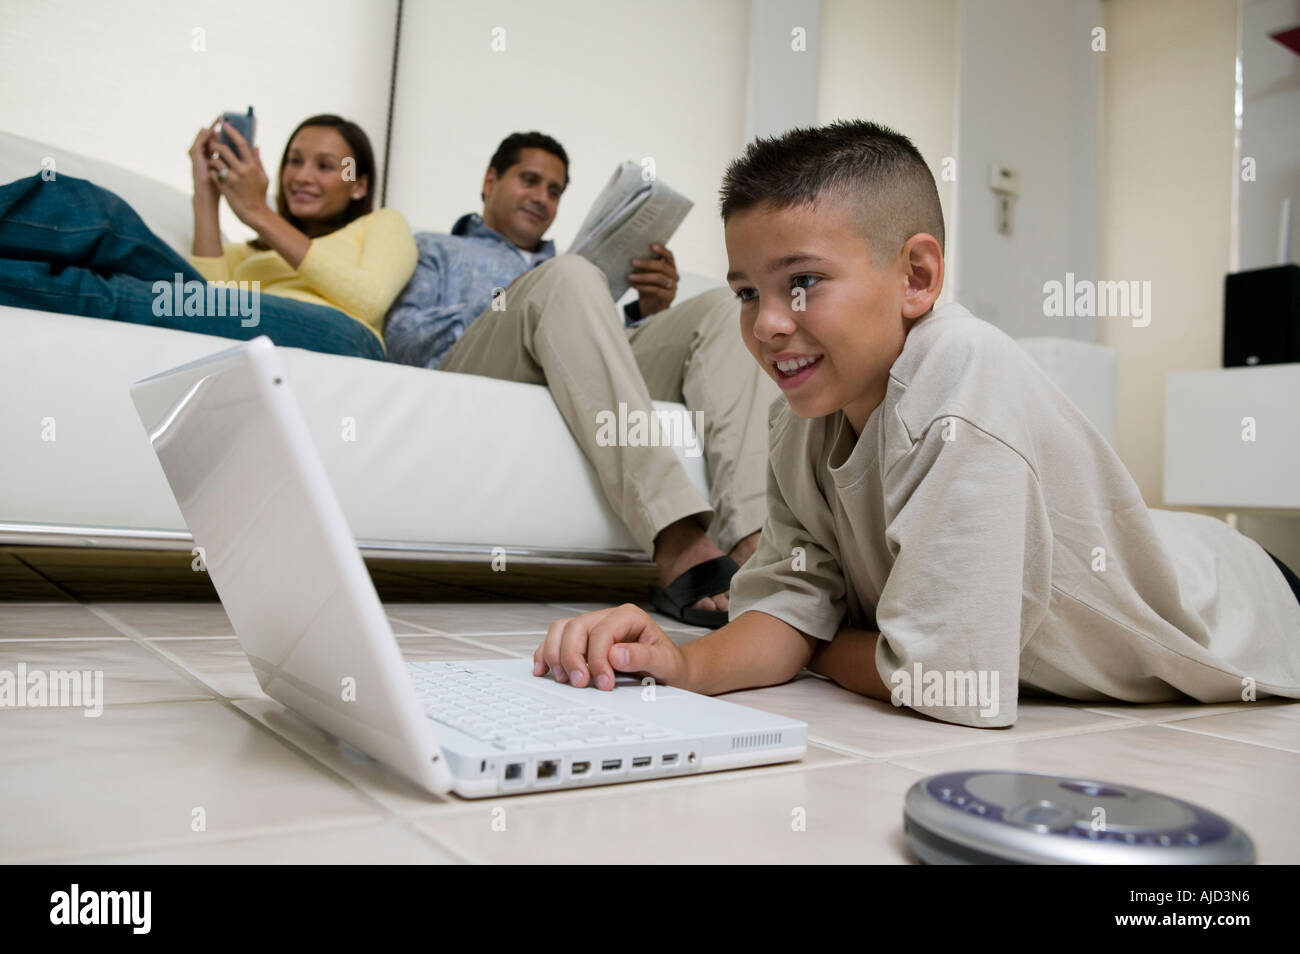 Junge mittels Laptop Erdgeschoss in Wohnzimmer, Mutter und Vater auf Sofa, Grundriss Stockfoto